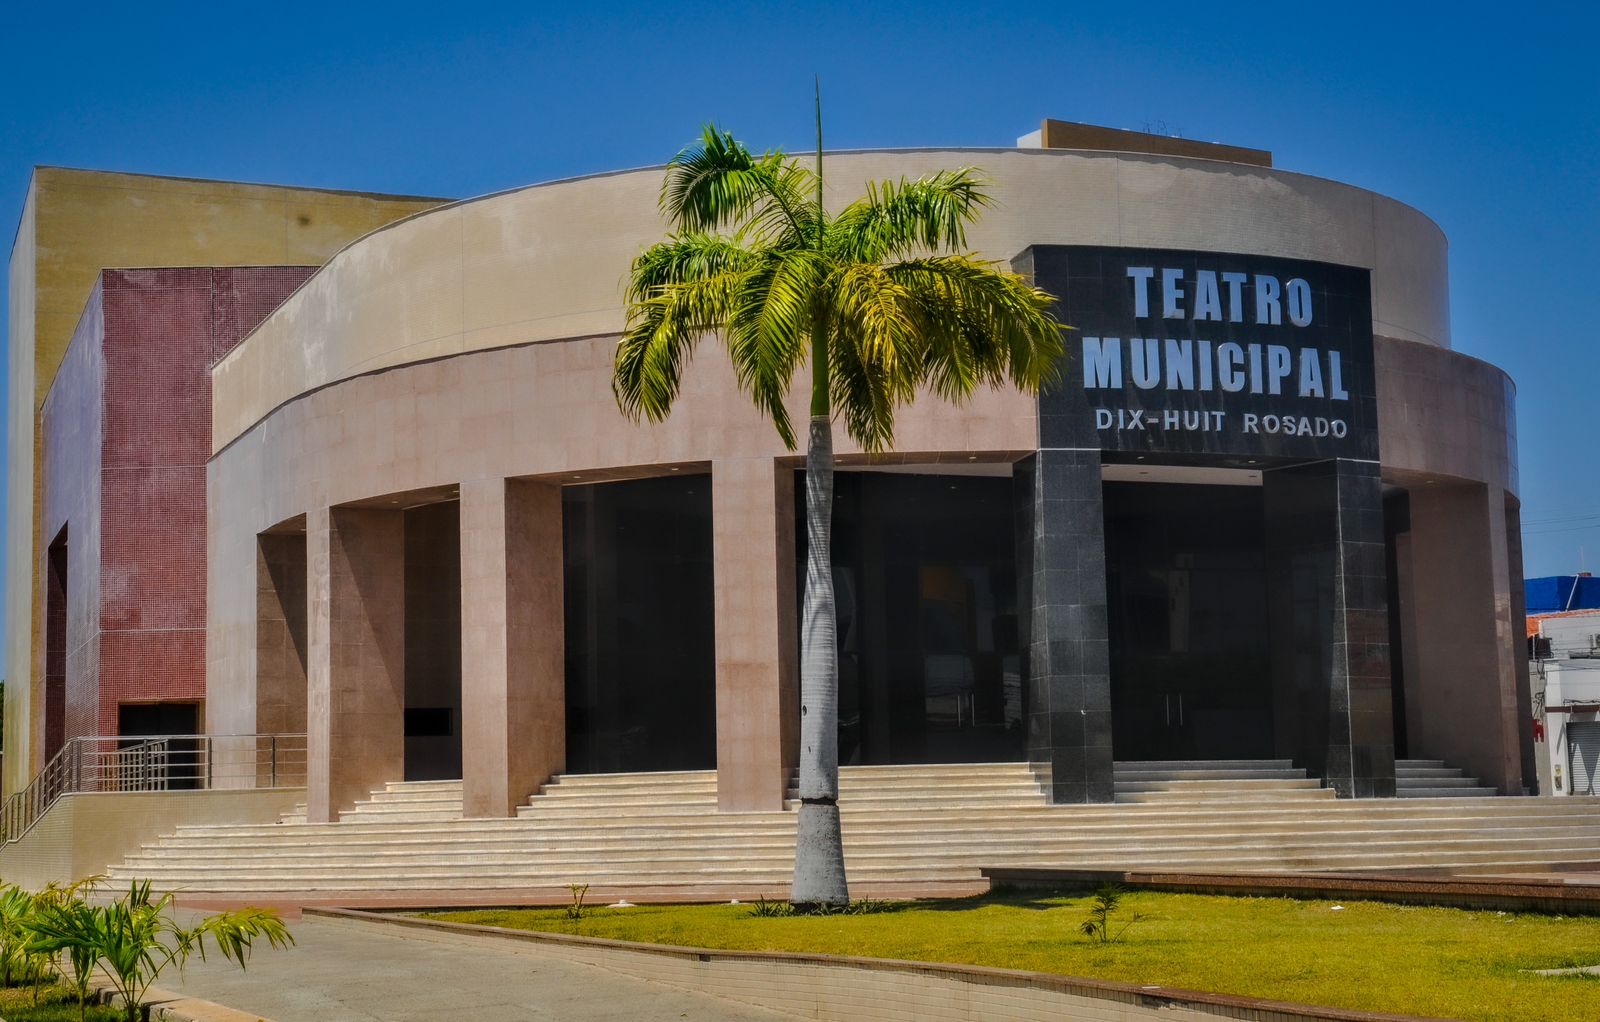 Teatro Municipal será reinaugurado com programação cultural nesta segunda-feira